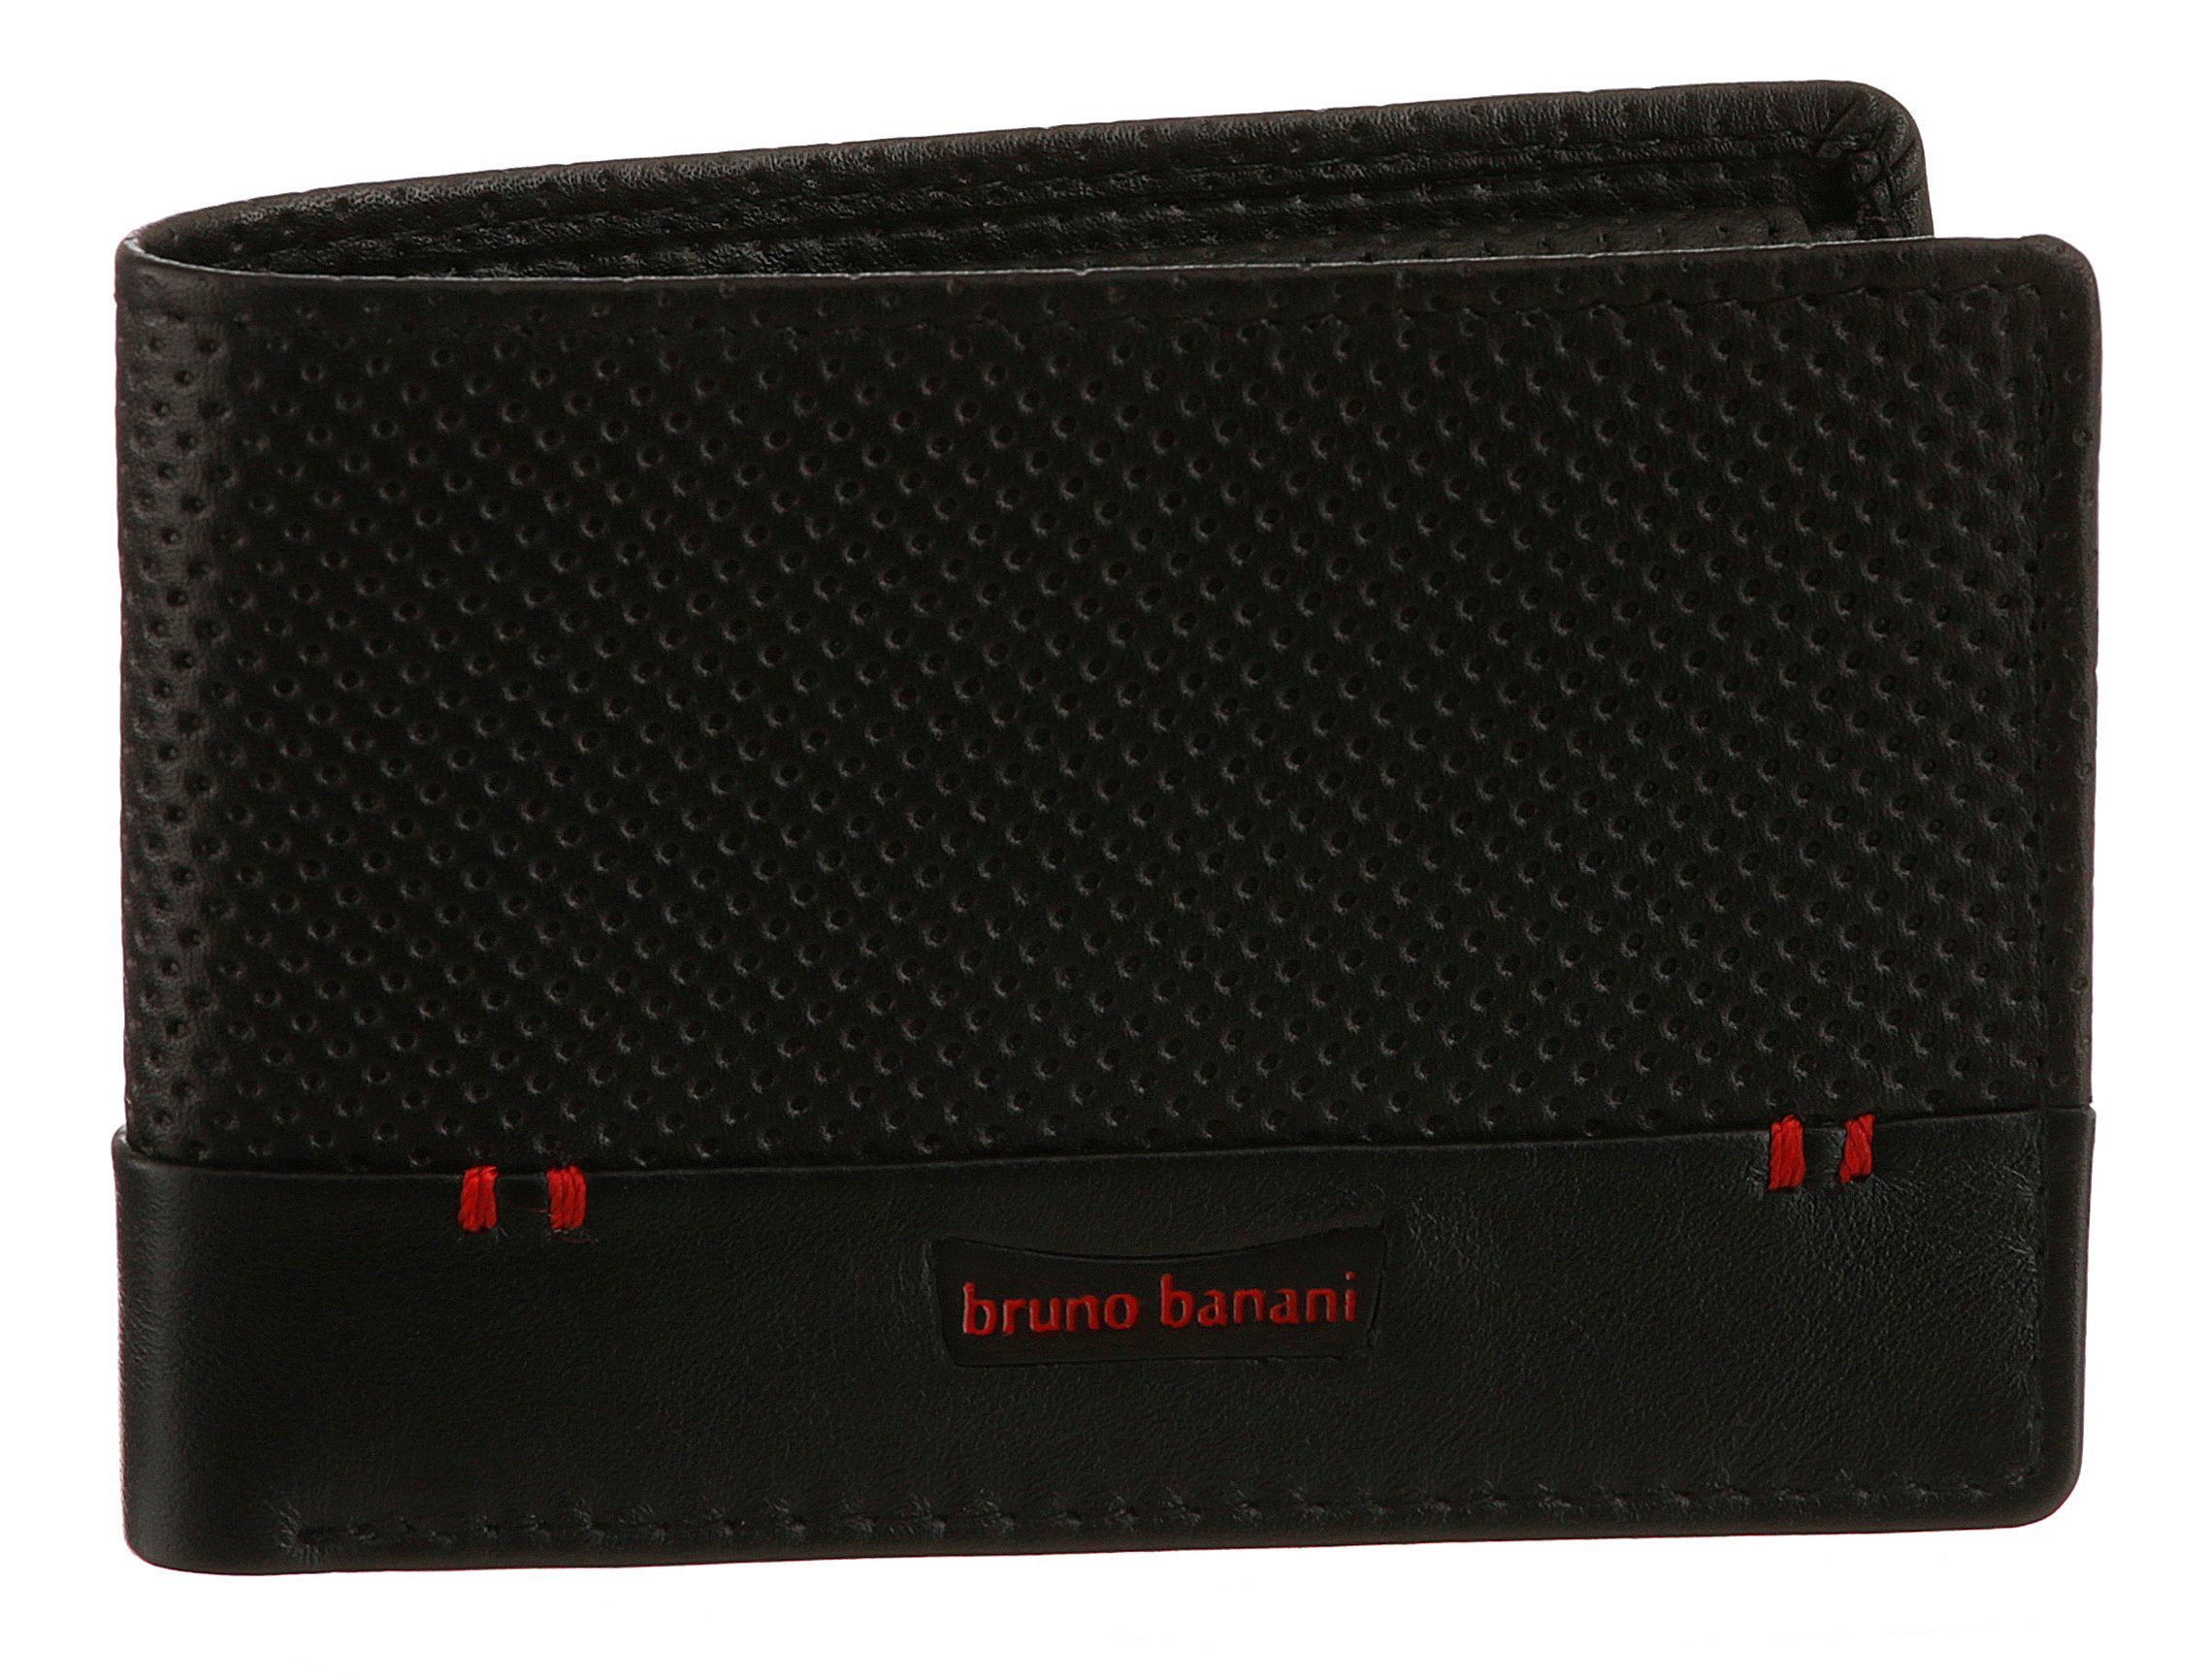 [Wir haben eine große Menge] Bruno Banani Geldbörse, aus Leder echtem